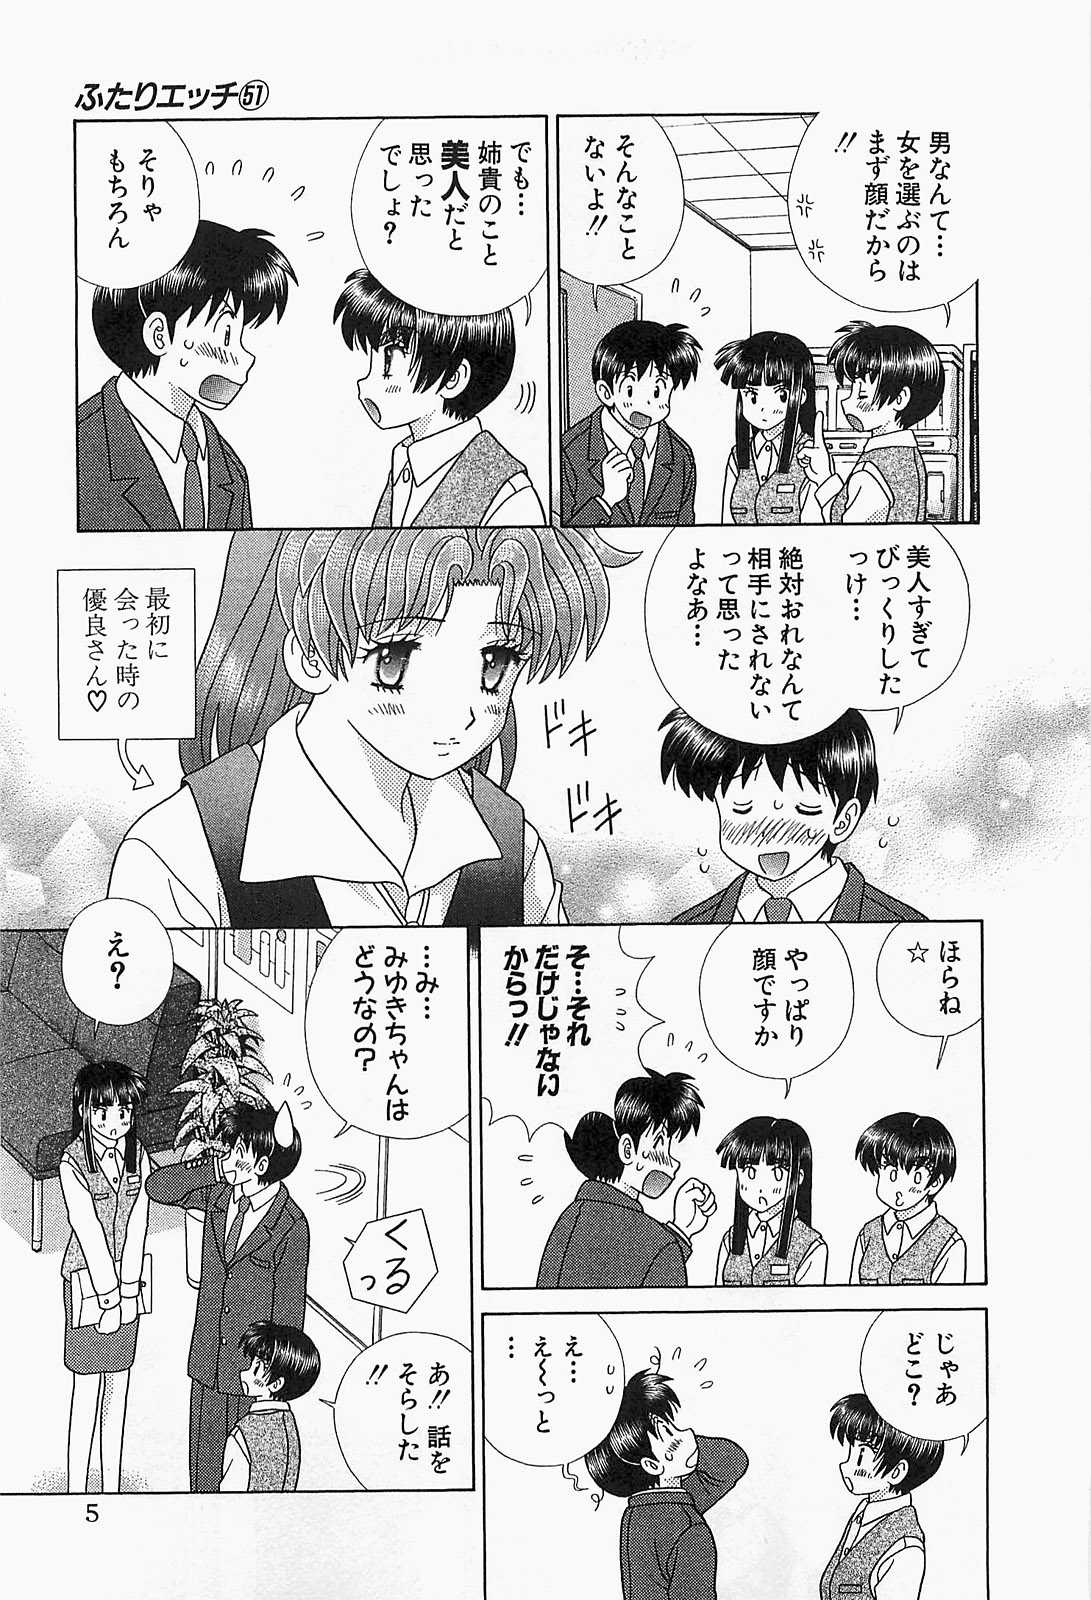 [Katsu Aki] Futari Ecchi Vol. 51 [克亜樹] ふたりエッチ 第51巻